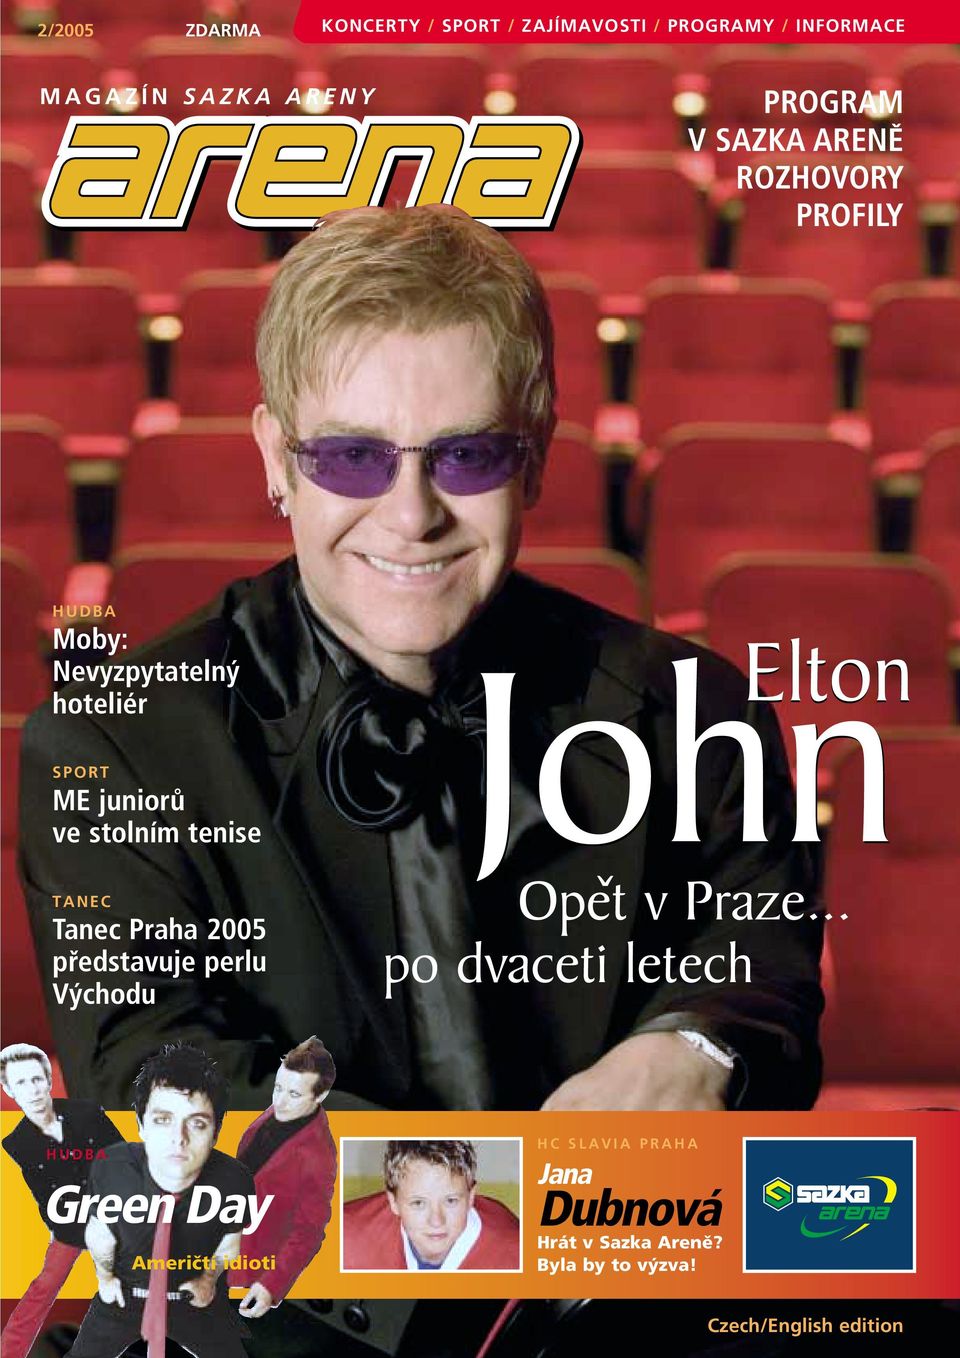 Tanec Praha 2005 představuje perlu Východu John ˇ John Elton Opet v Praze.